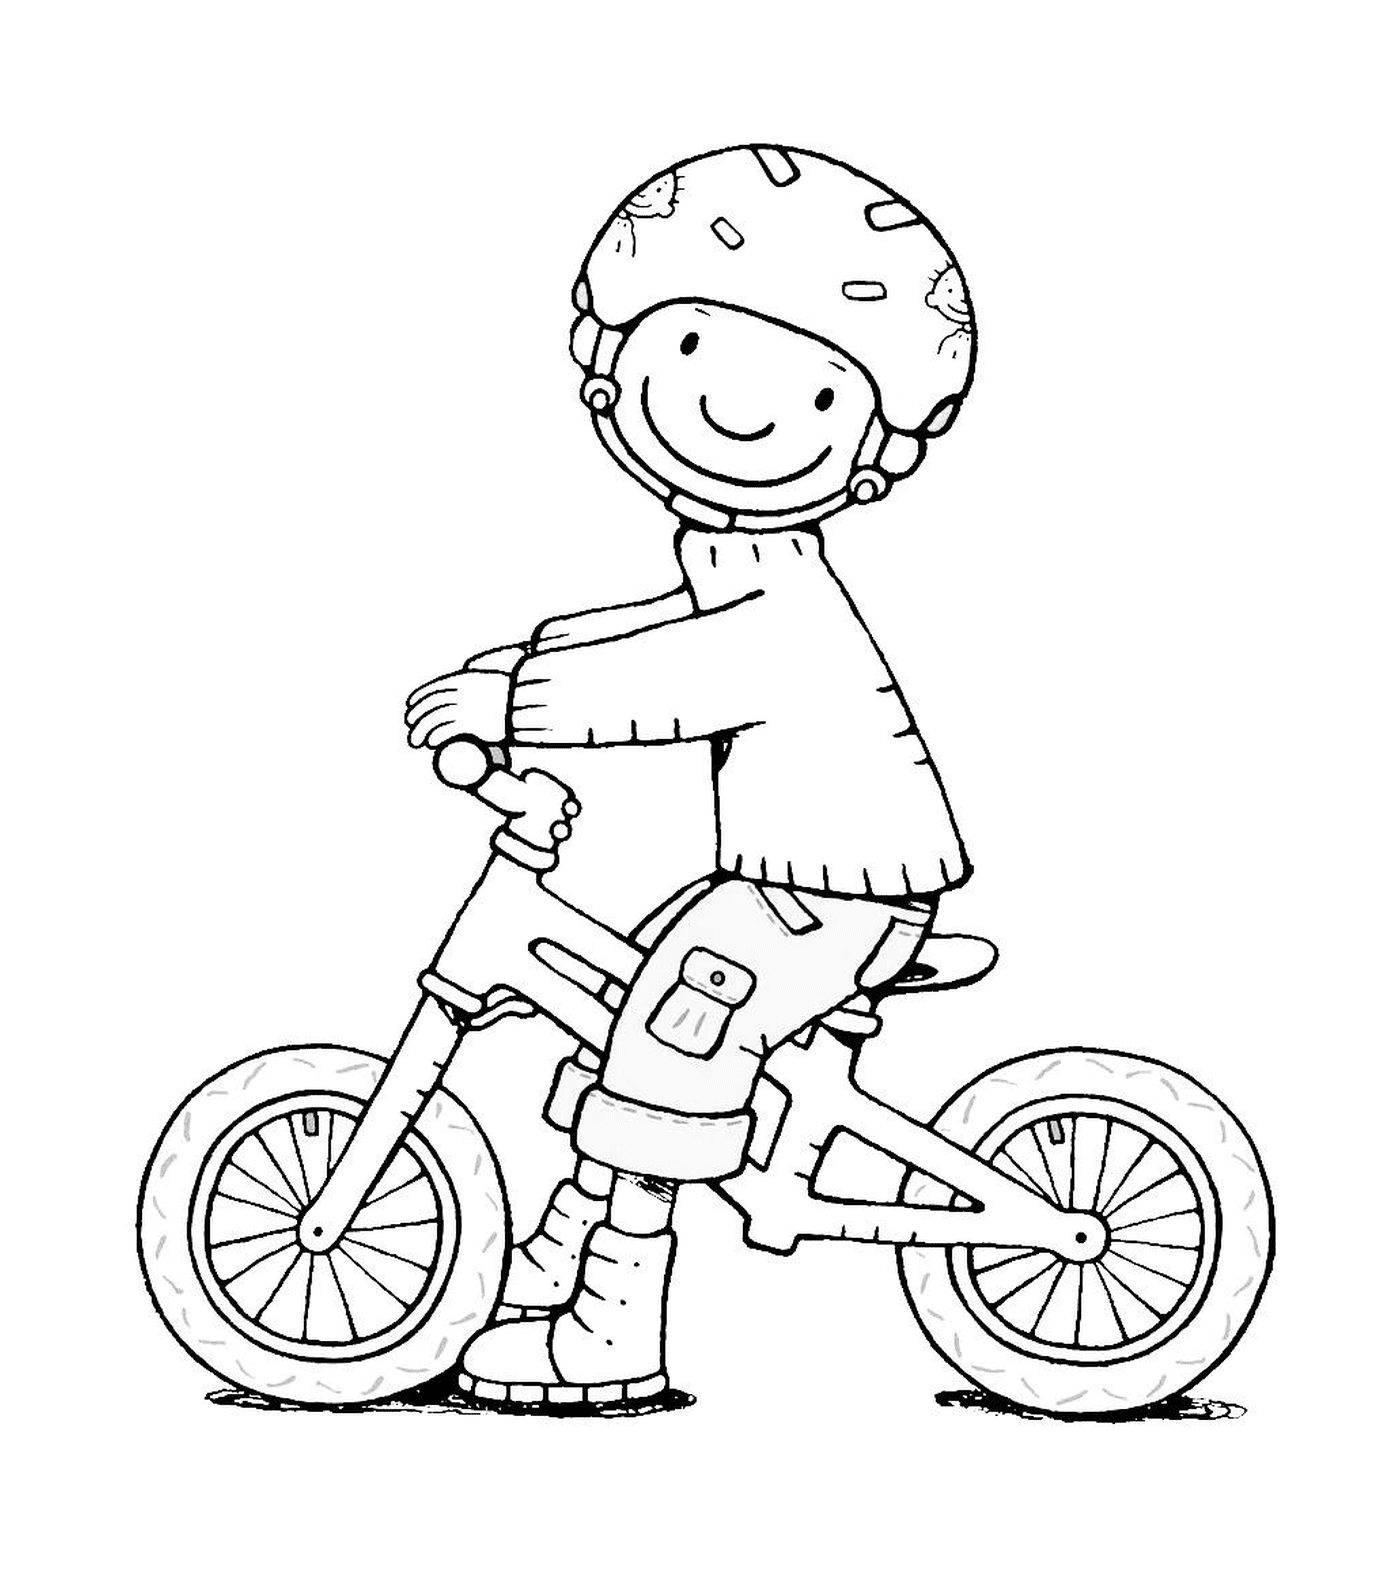  Спорт, велосипед, мальчик на велосипеде 